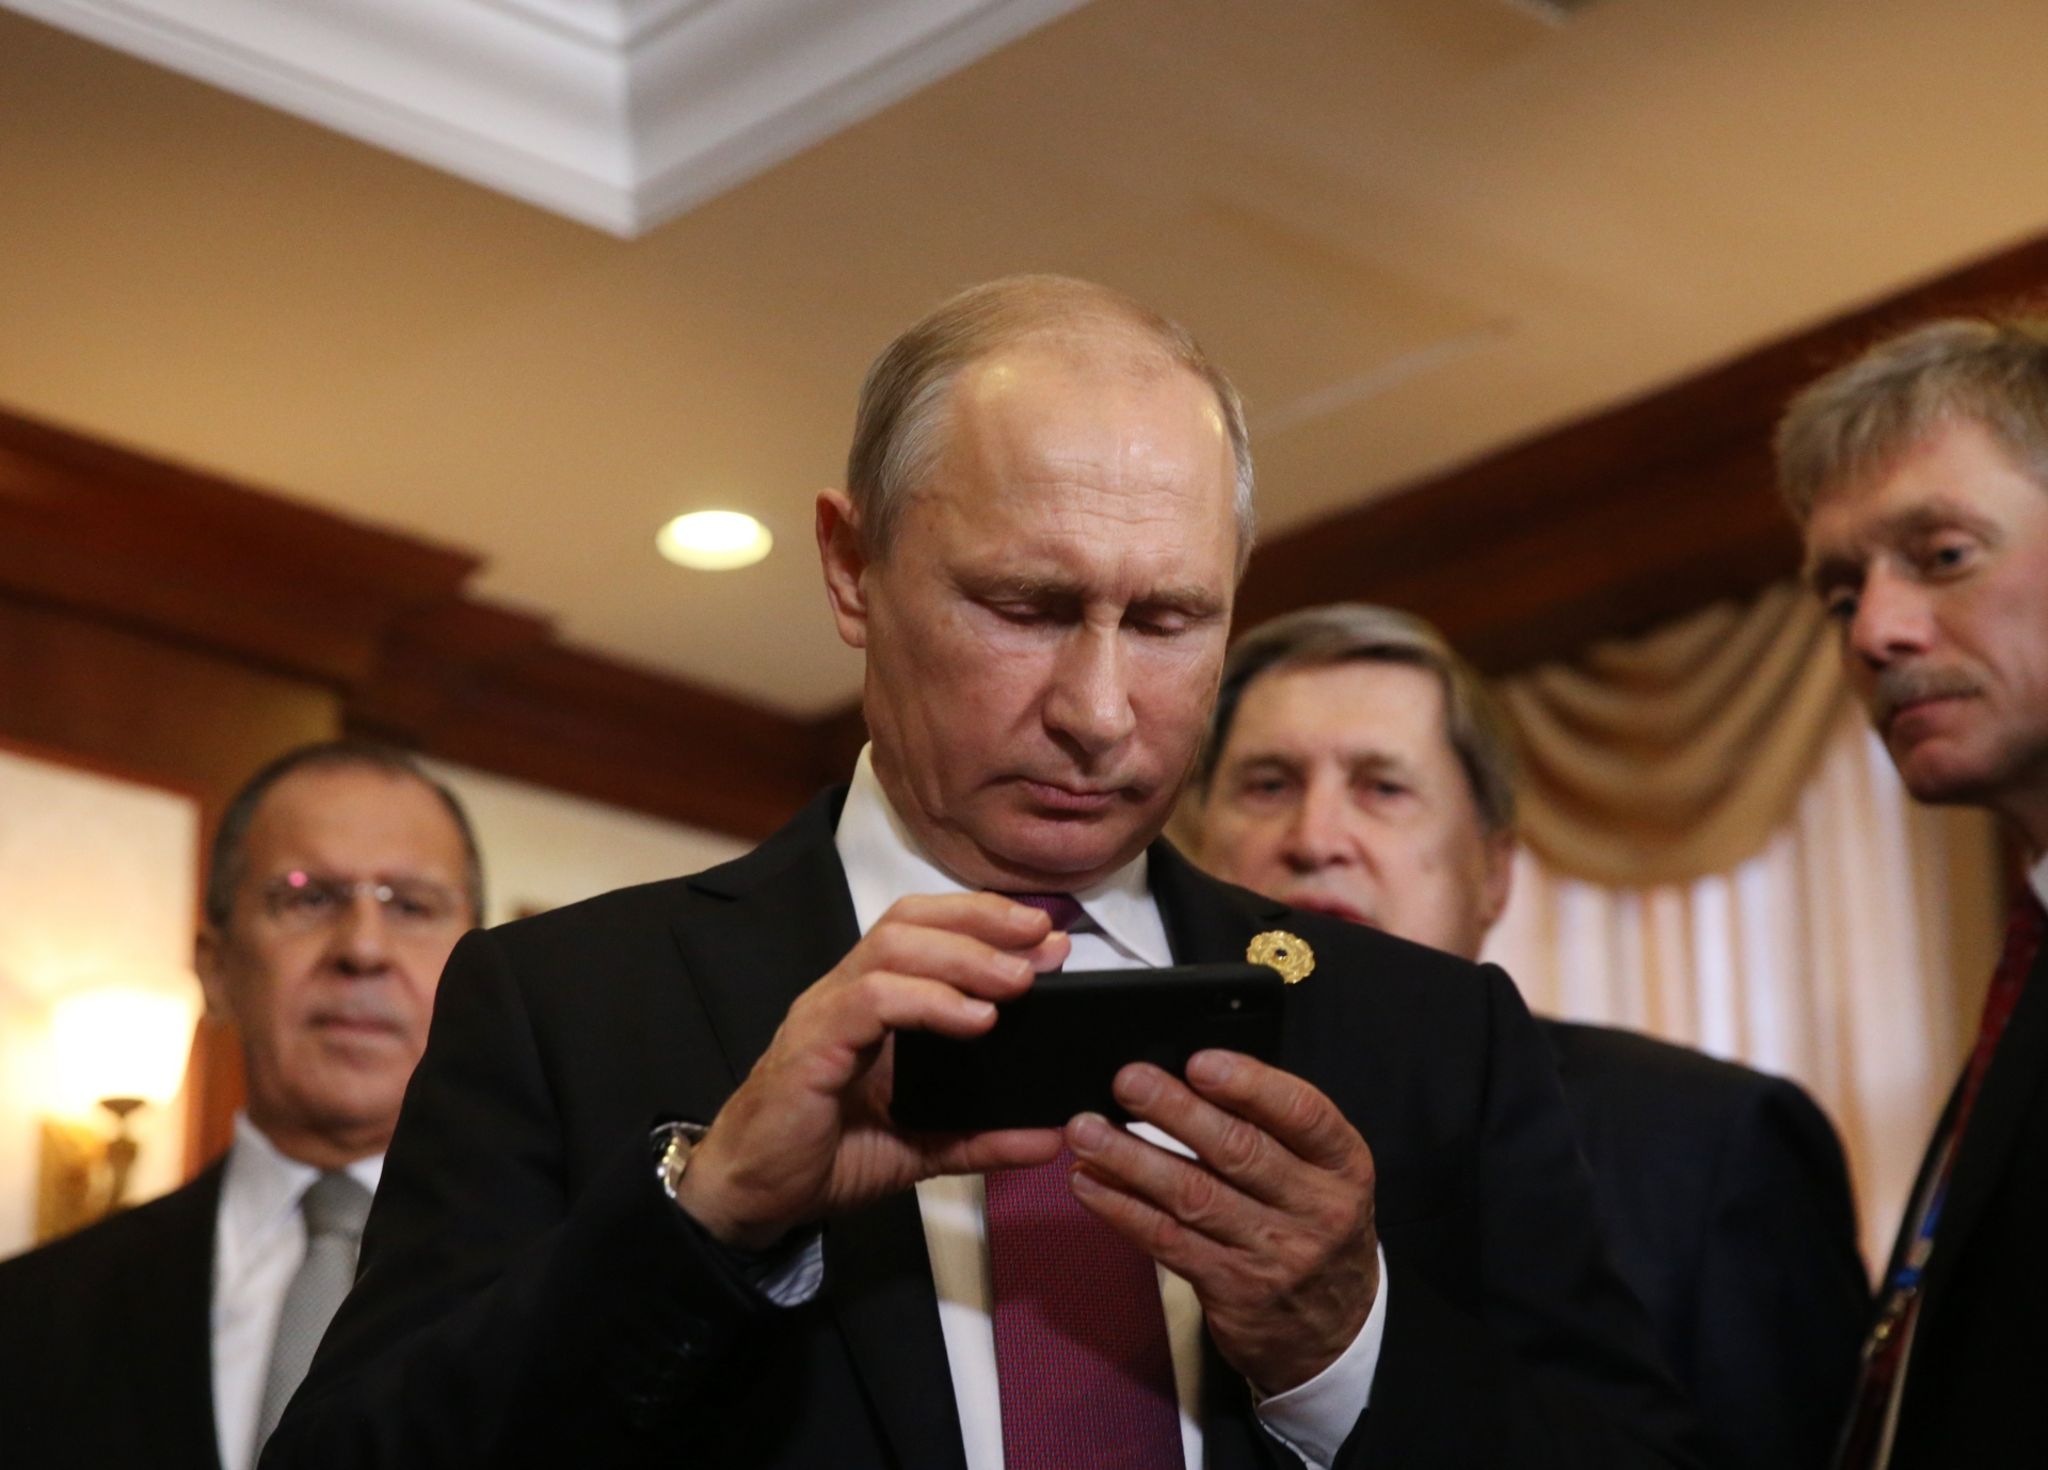 Владимир Путин осматривает iPhone в компании пресс-секретаря Дмитрия Пескова (справа) и министра иностранных дел Сергея Лаврова (слева)